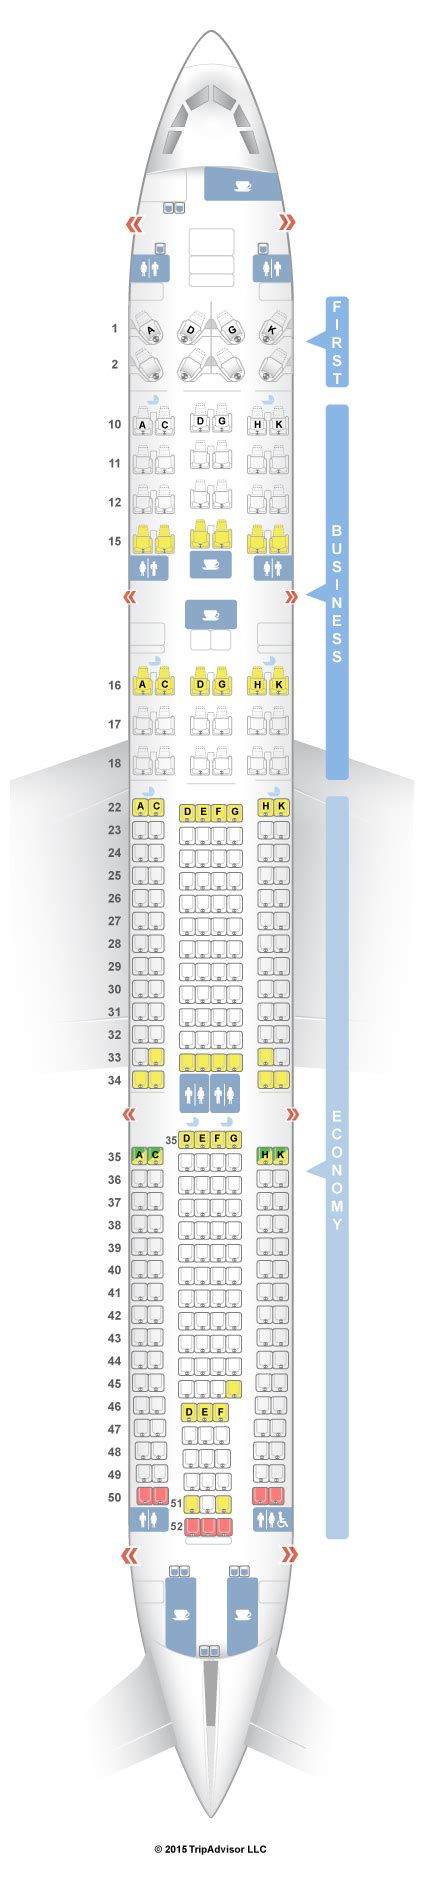 Seatguru Seat Map Dragonair Airbus A330 300 333 V1